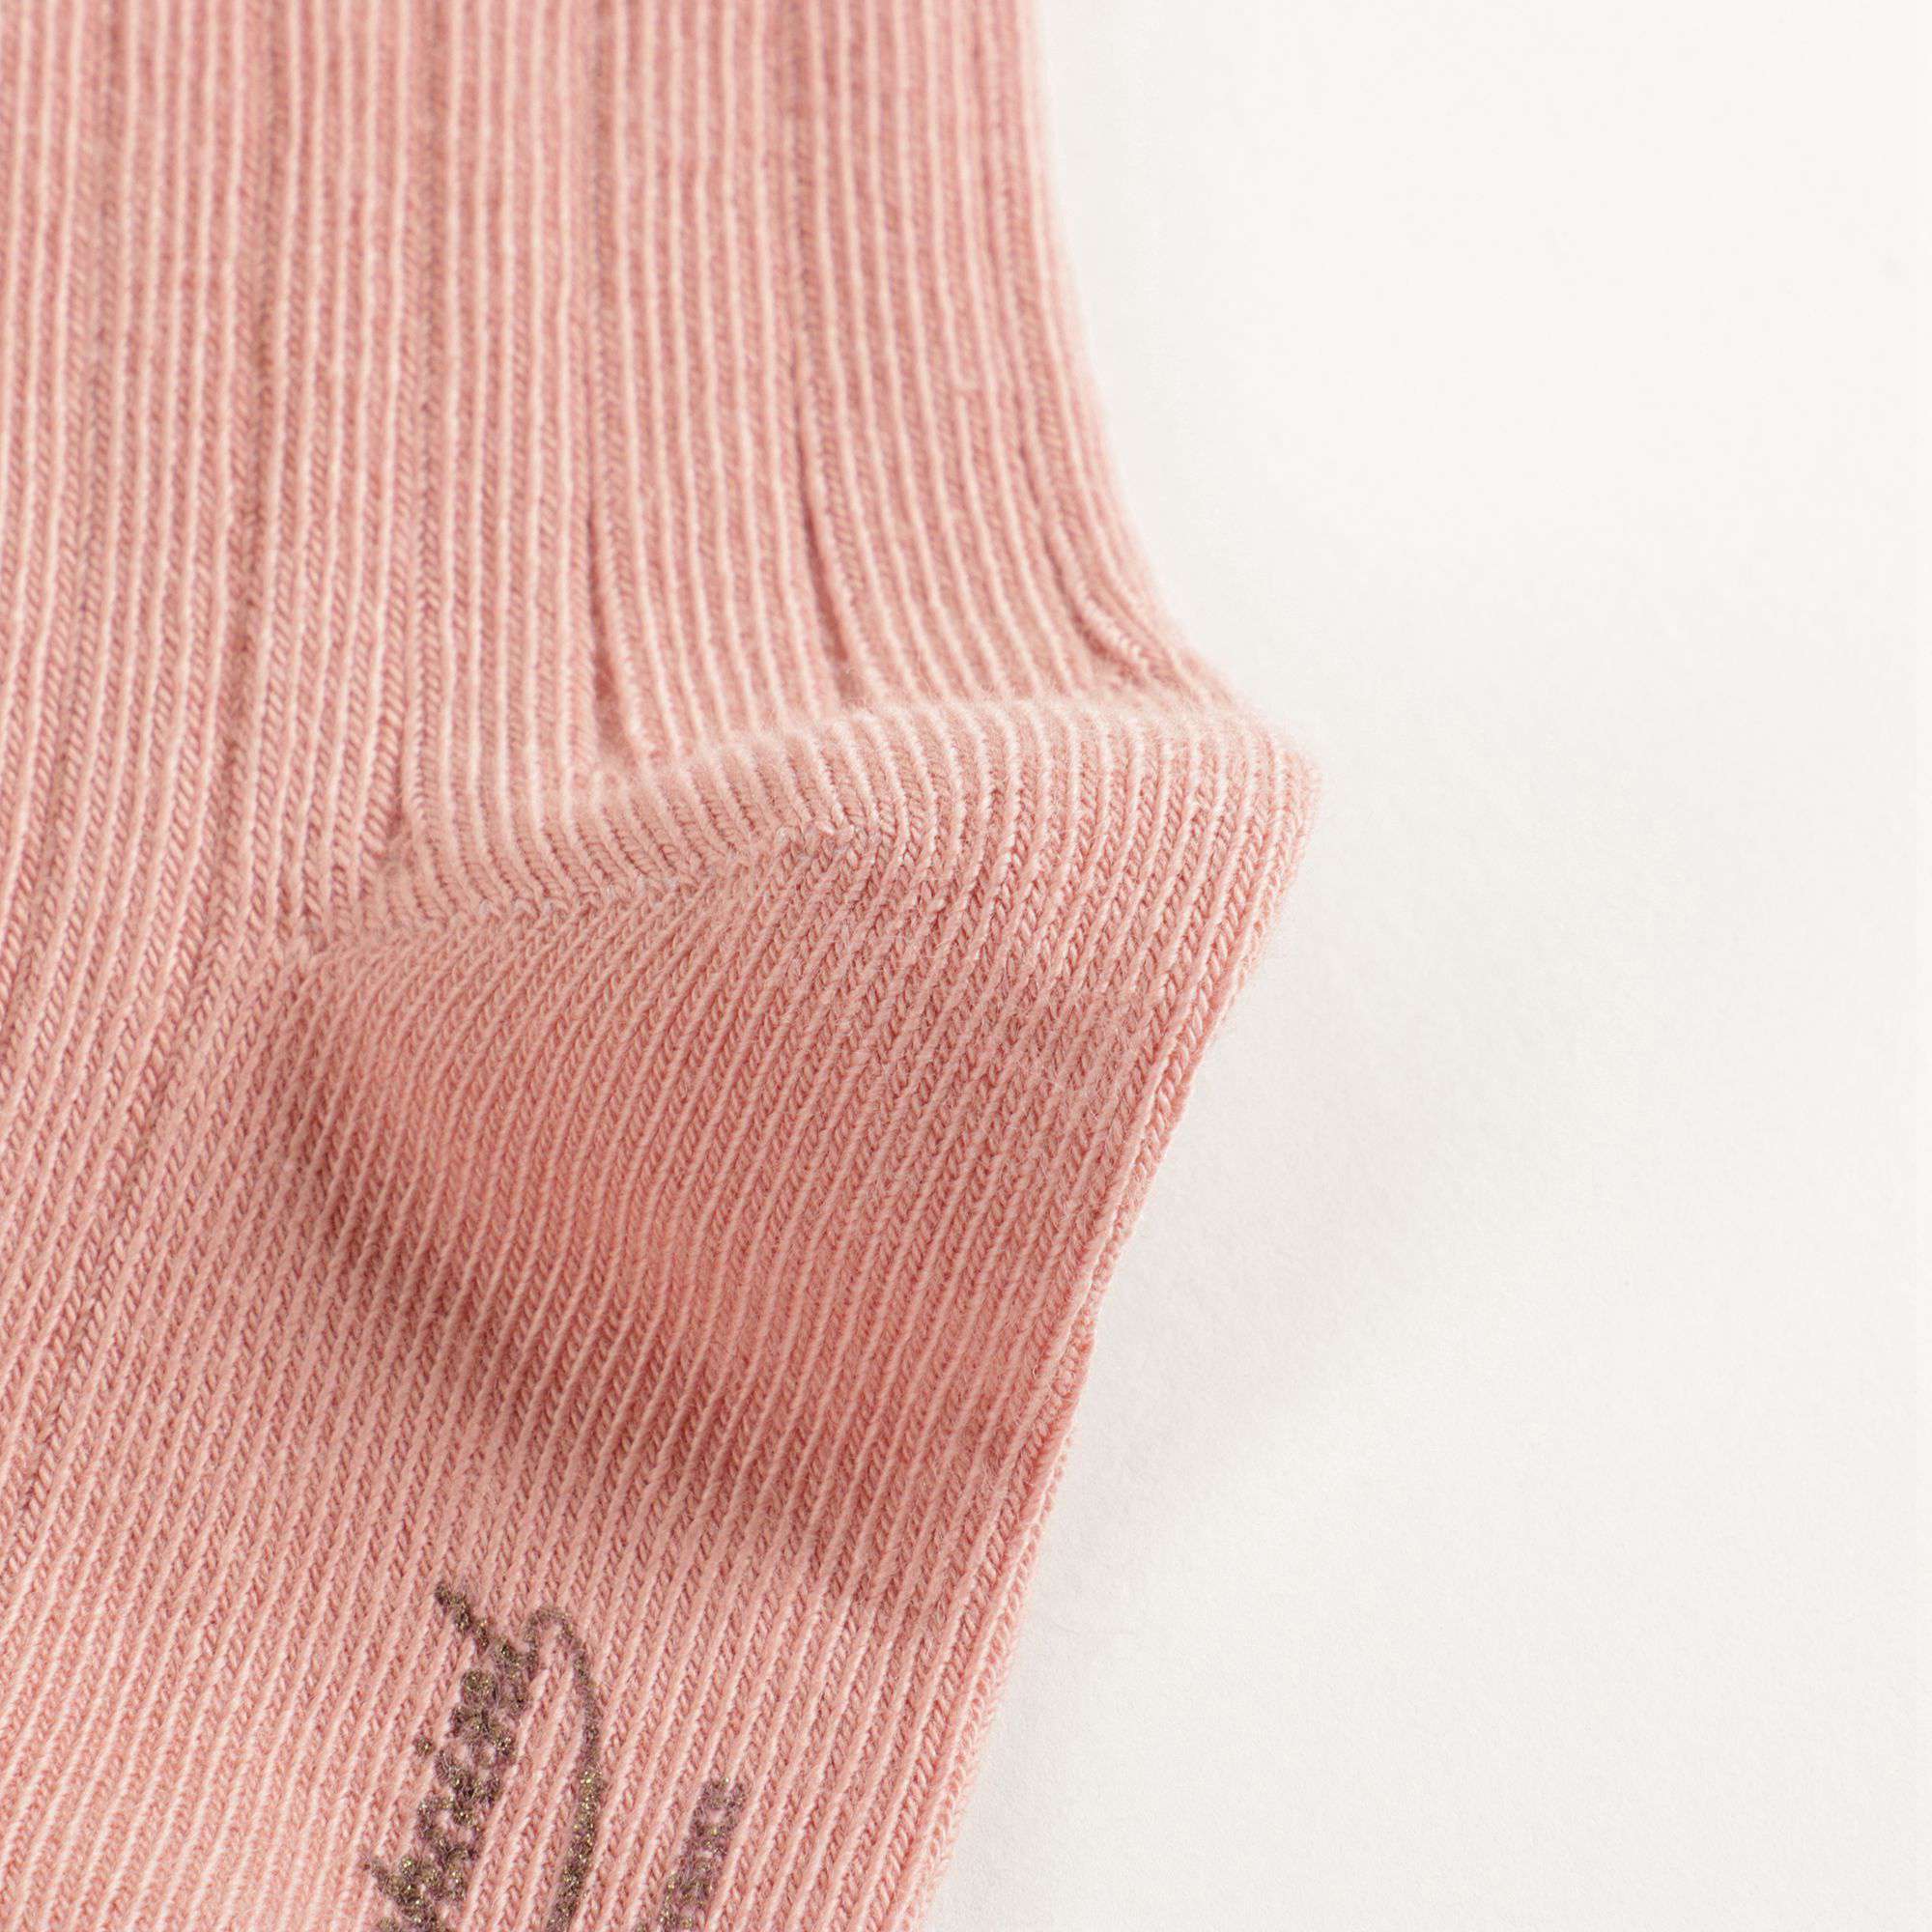 Girls Light Pink Socks